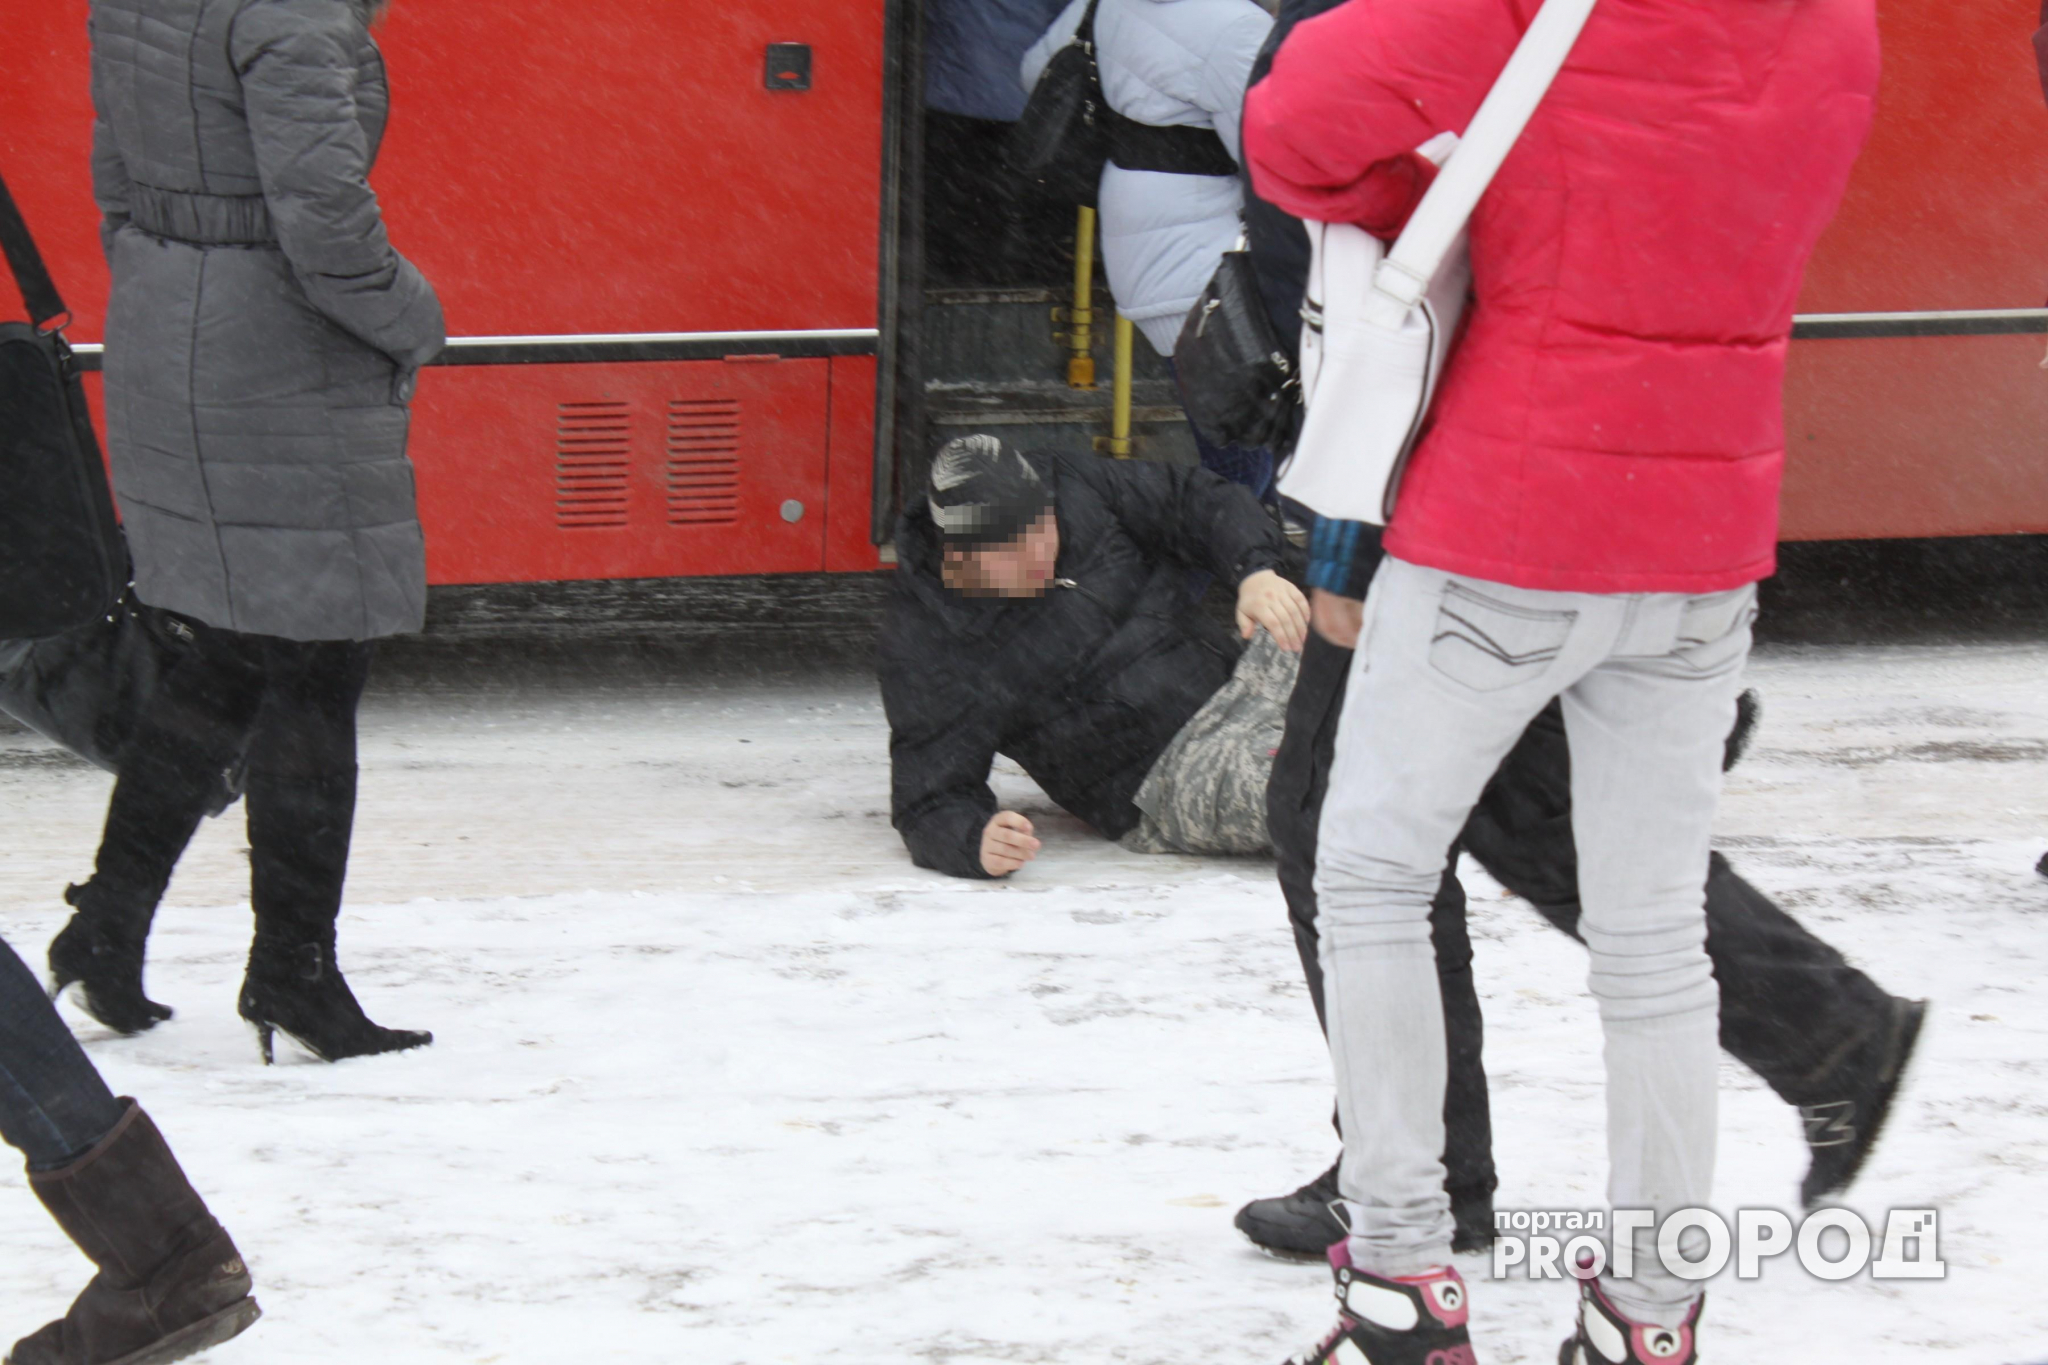 В Кирове кондуктор вытолкнула мужчину из автобуса: пассажир сломал ногу